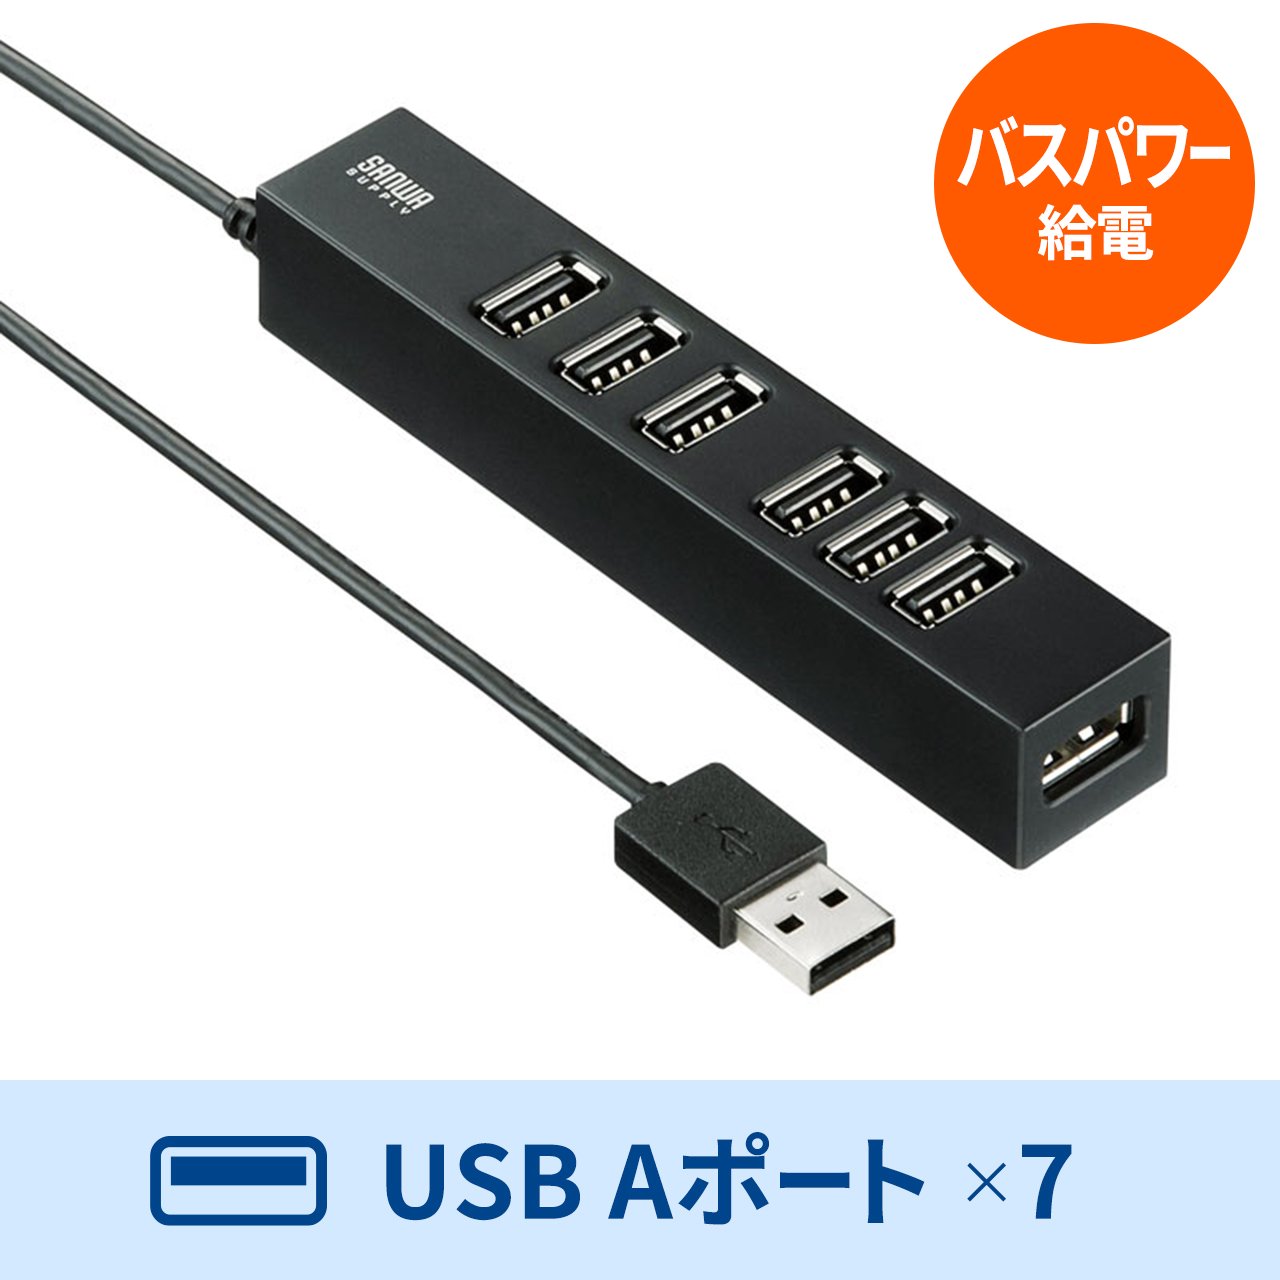 USBnu USB A 7|[g USB2.0 Zt oXp[p ʃt@Xi[ Œ 1m ubN USB-2H701BKN